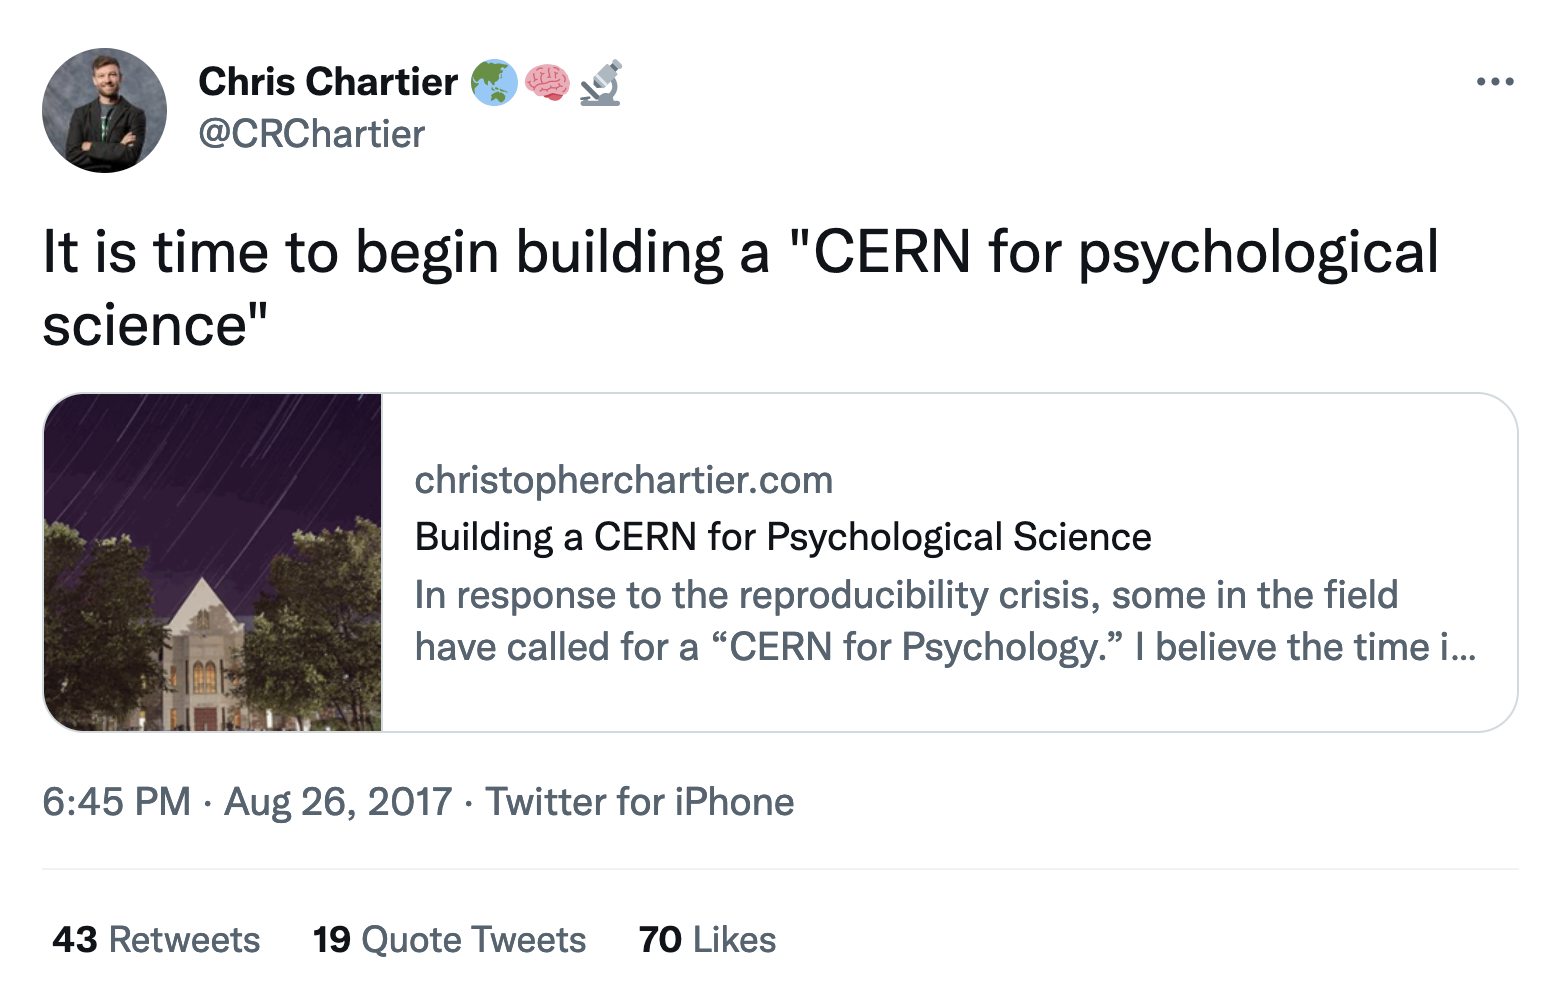 Tweet de Chris Chartier: Es hora de empezar a construir un CERN para la ciencia psicológica